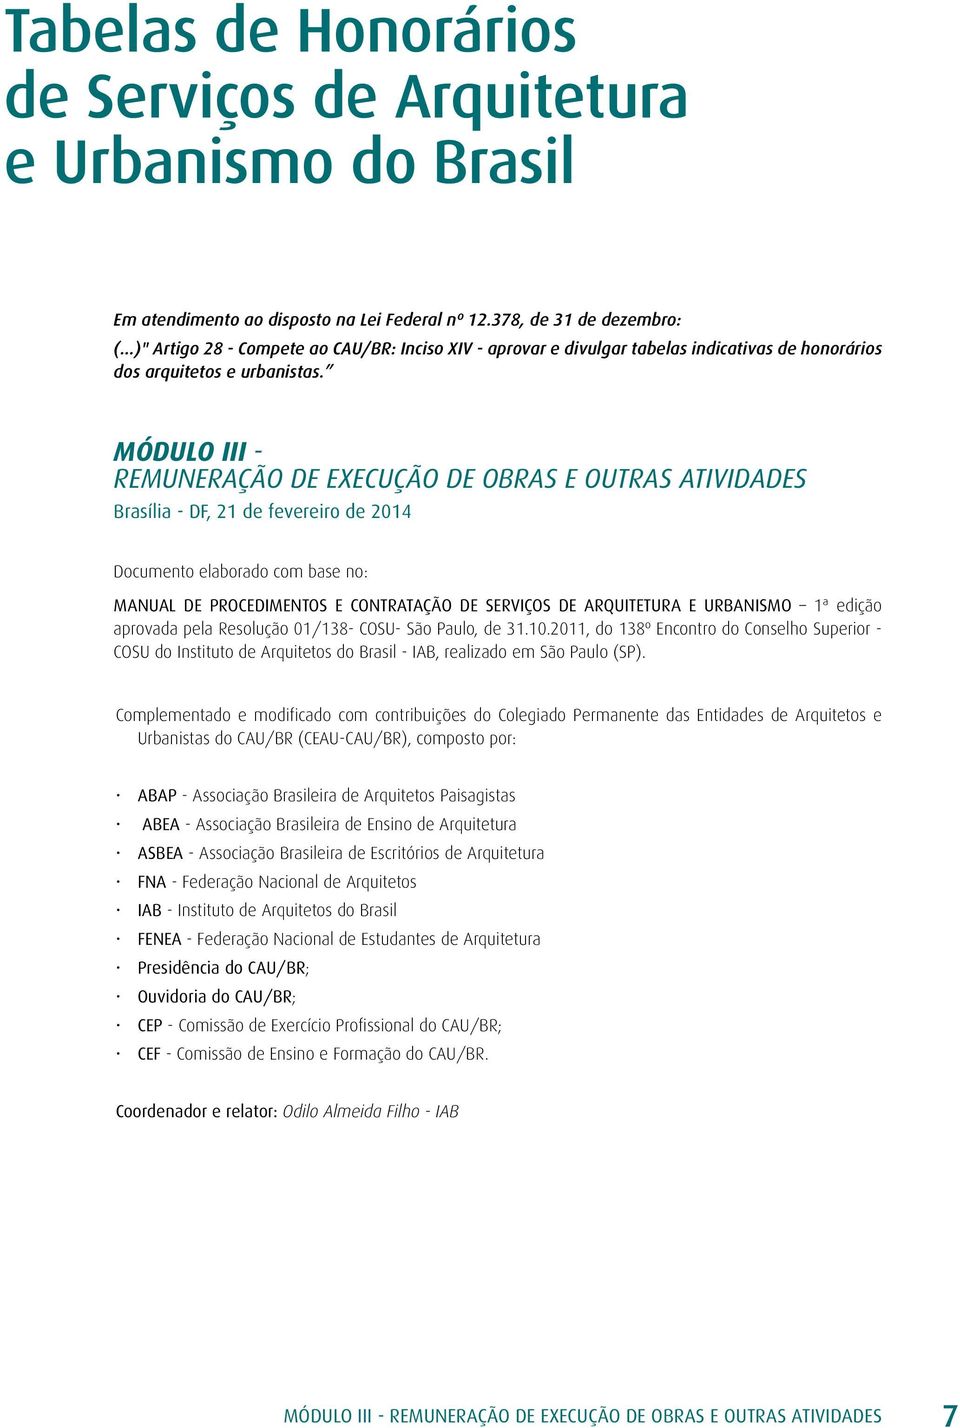 MÓDULO III - REMUNERAÇÃO DE EXECUÇÃO DE OBRAS E OUTRAS ATIVIDADES Brasília - DF, 21 de fevereiro de 2014 Documento elaborado com base no: MANUAL DE PROCEDIMENTOS E CONTRATAÇÃO DE SERVIÇOS DE